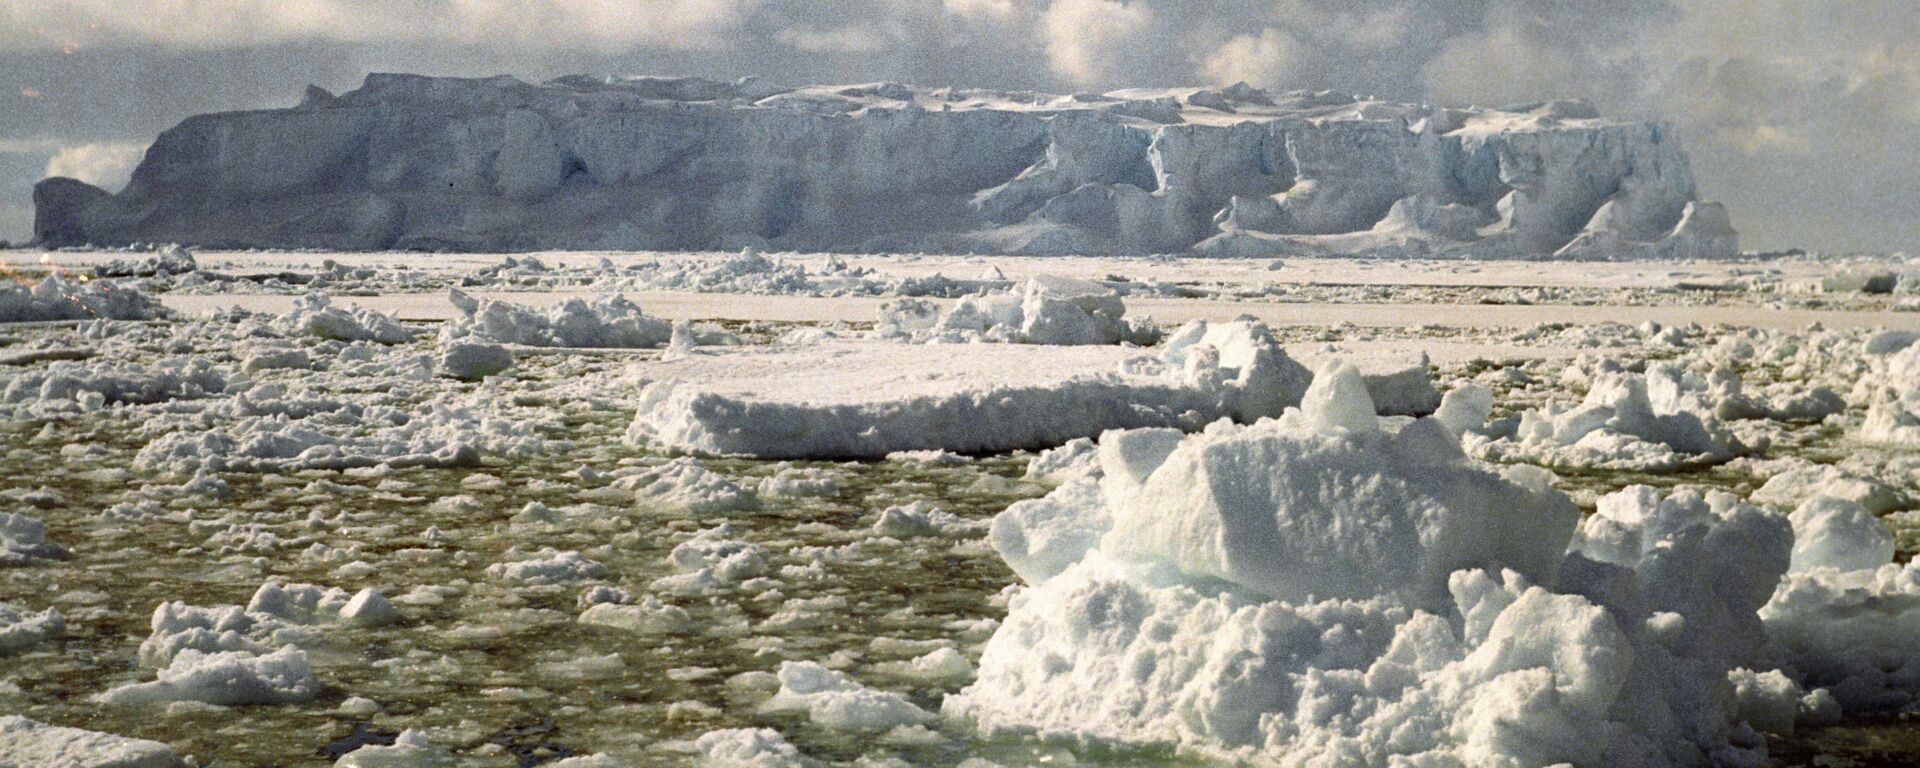 Таяние льдов в Антарктиде - Sputnik Արմենիա, 1920, 04.05.2020